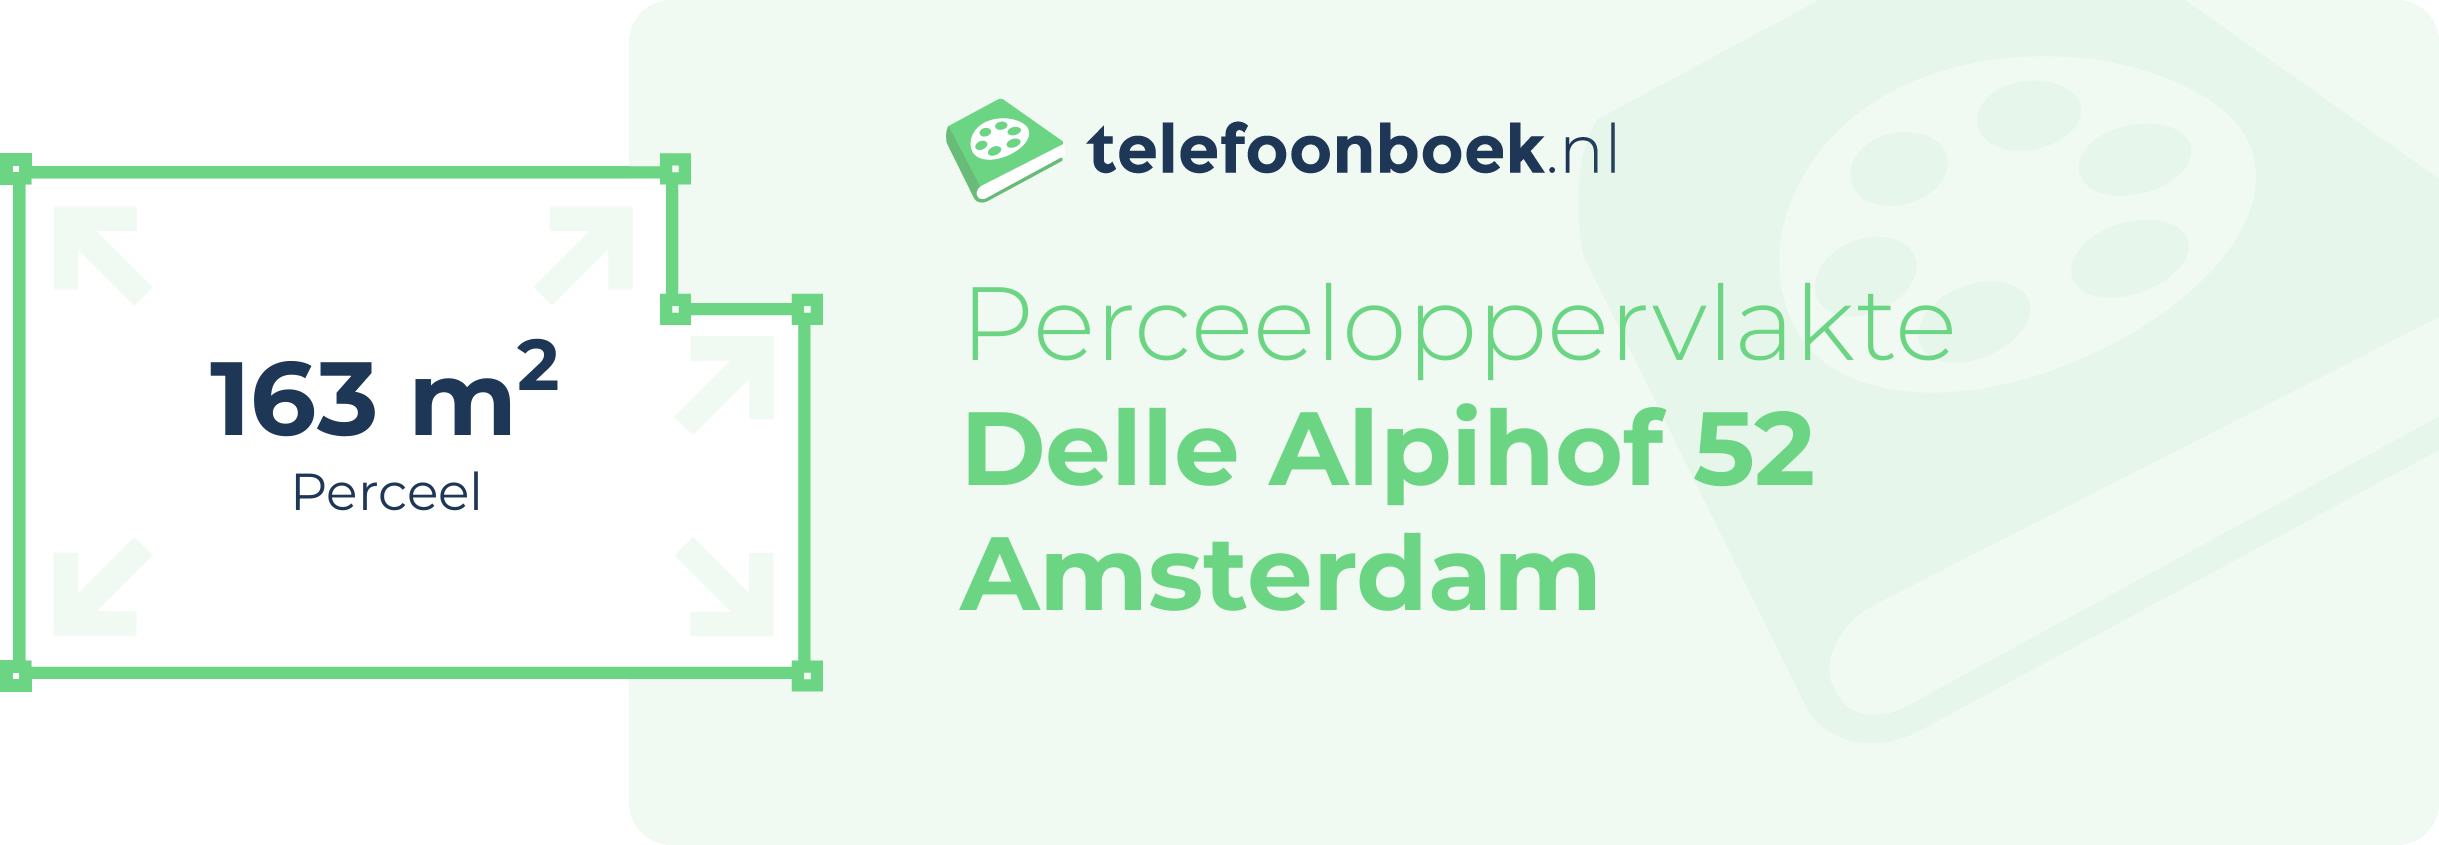 Perceeloppervlakte Delle Alpihof 52 Amsterdam